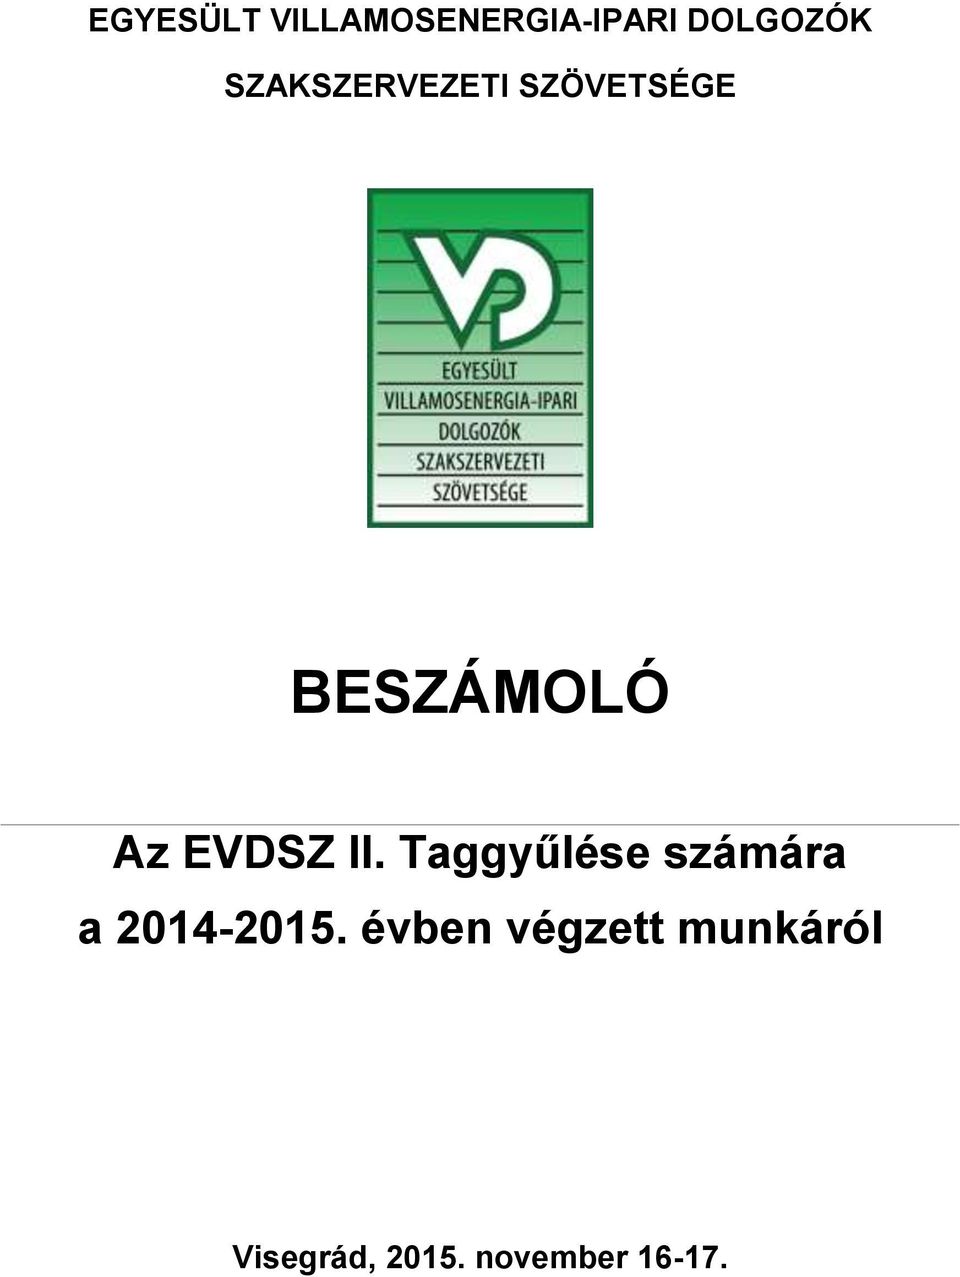 EVDSZ II. Taggyűlése számára a 2014-2015.